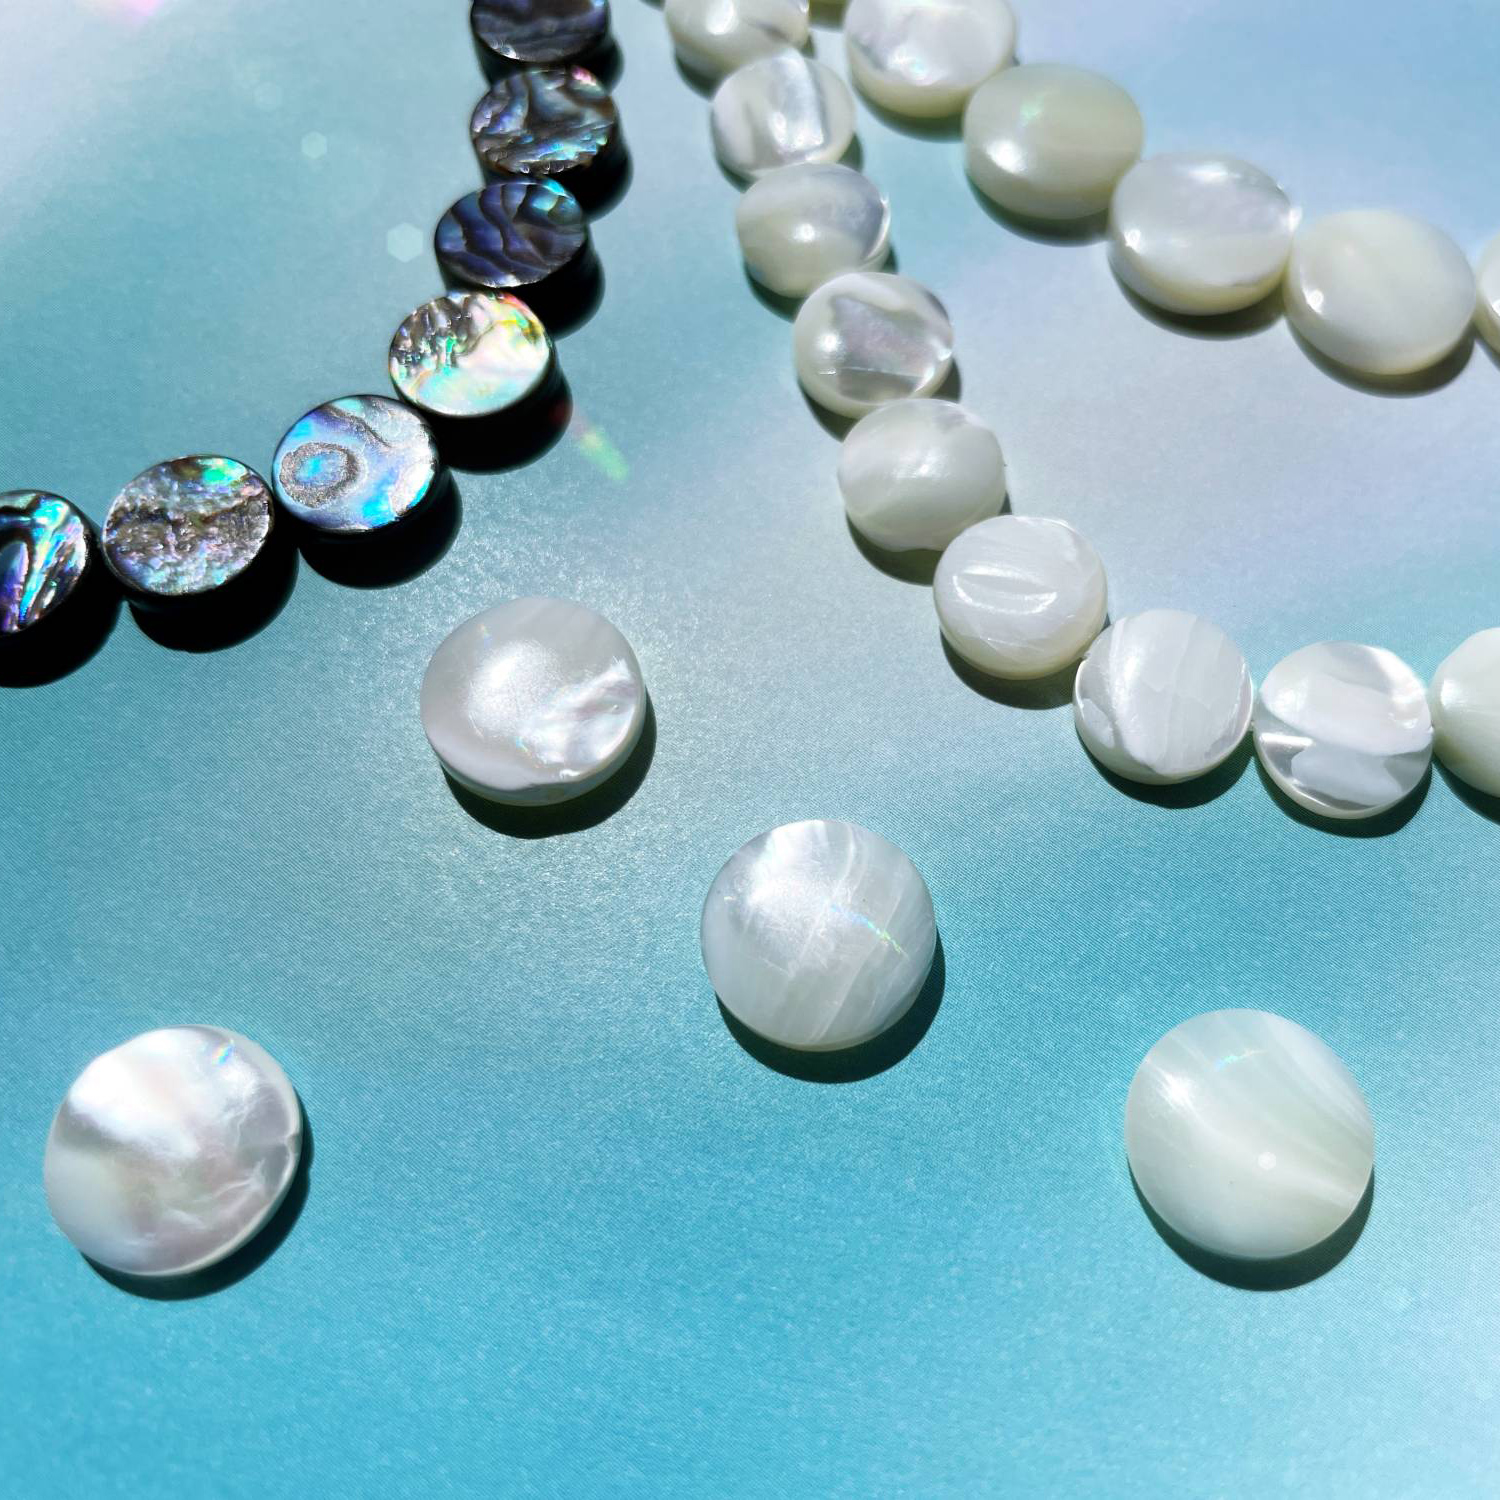 6月誕生石「パール」を生み出す真珠母貝・虹色に輝くマザーオブパール